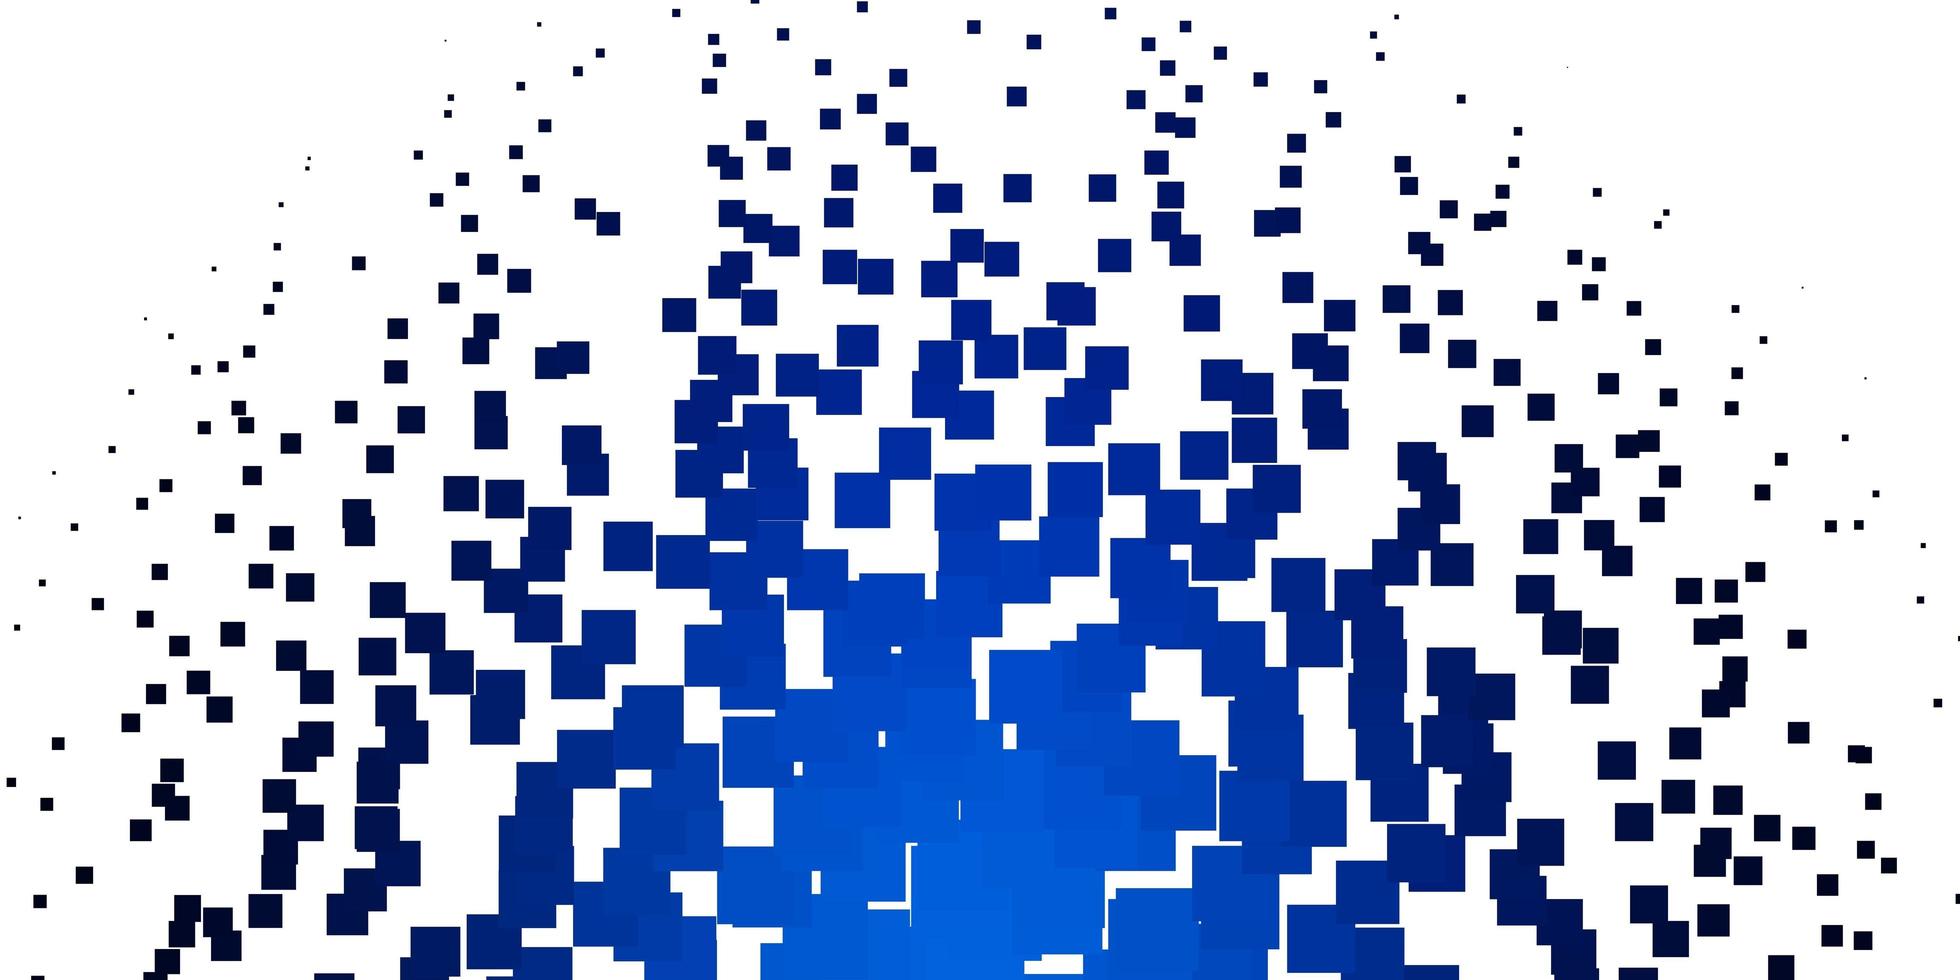 diseño de vector azul claro con líneas, rectángulos.